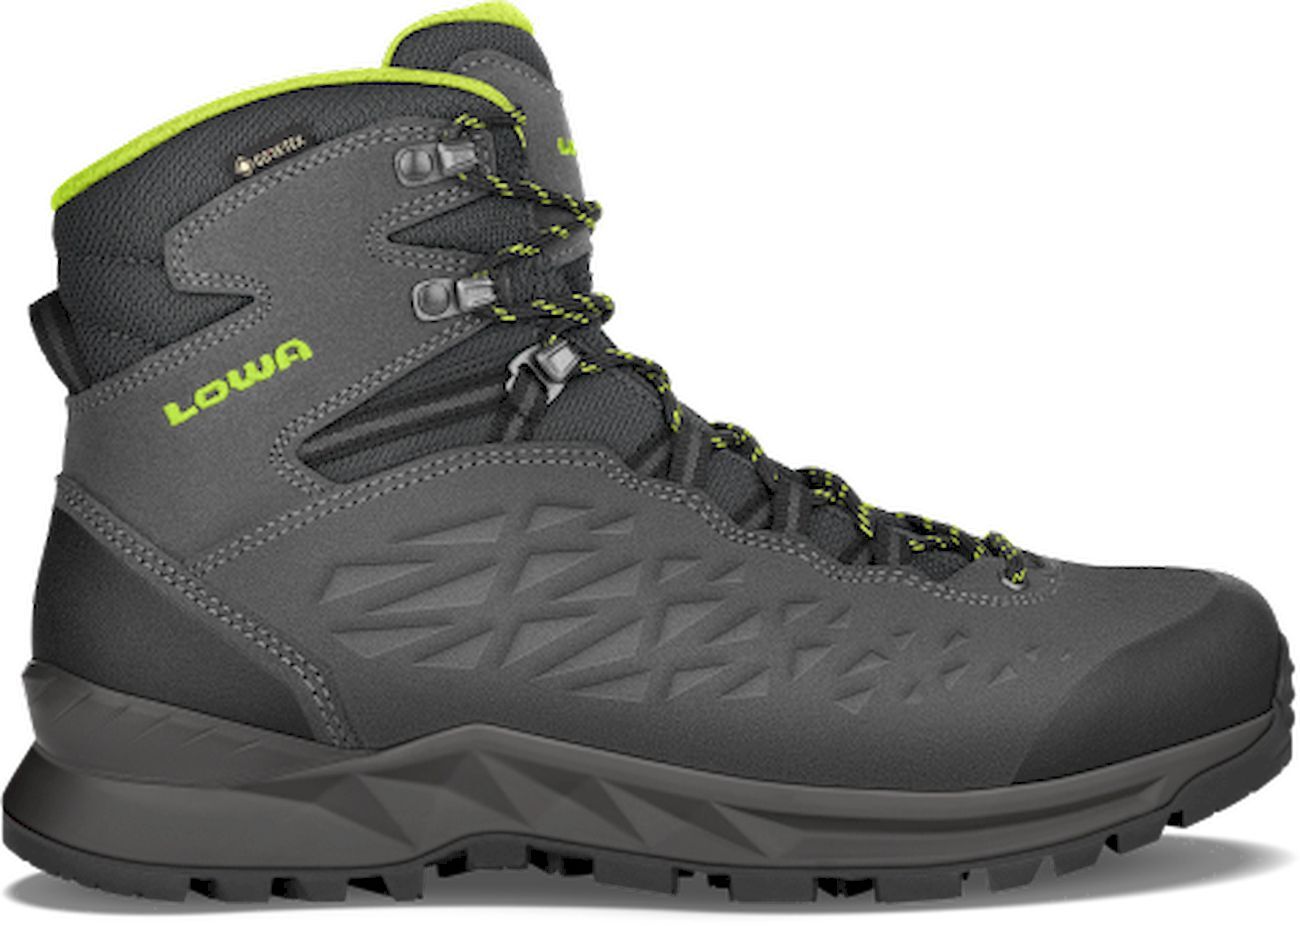 Lowa Explorer ll GTX Mid - Hiking boots - Men's